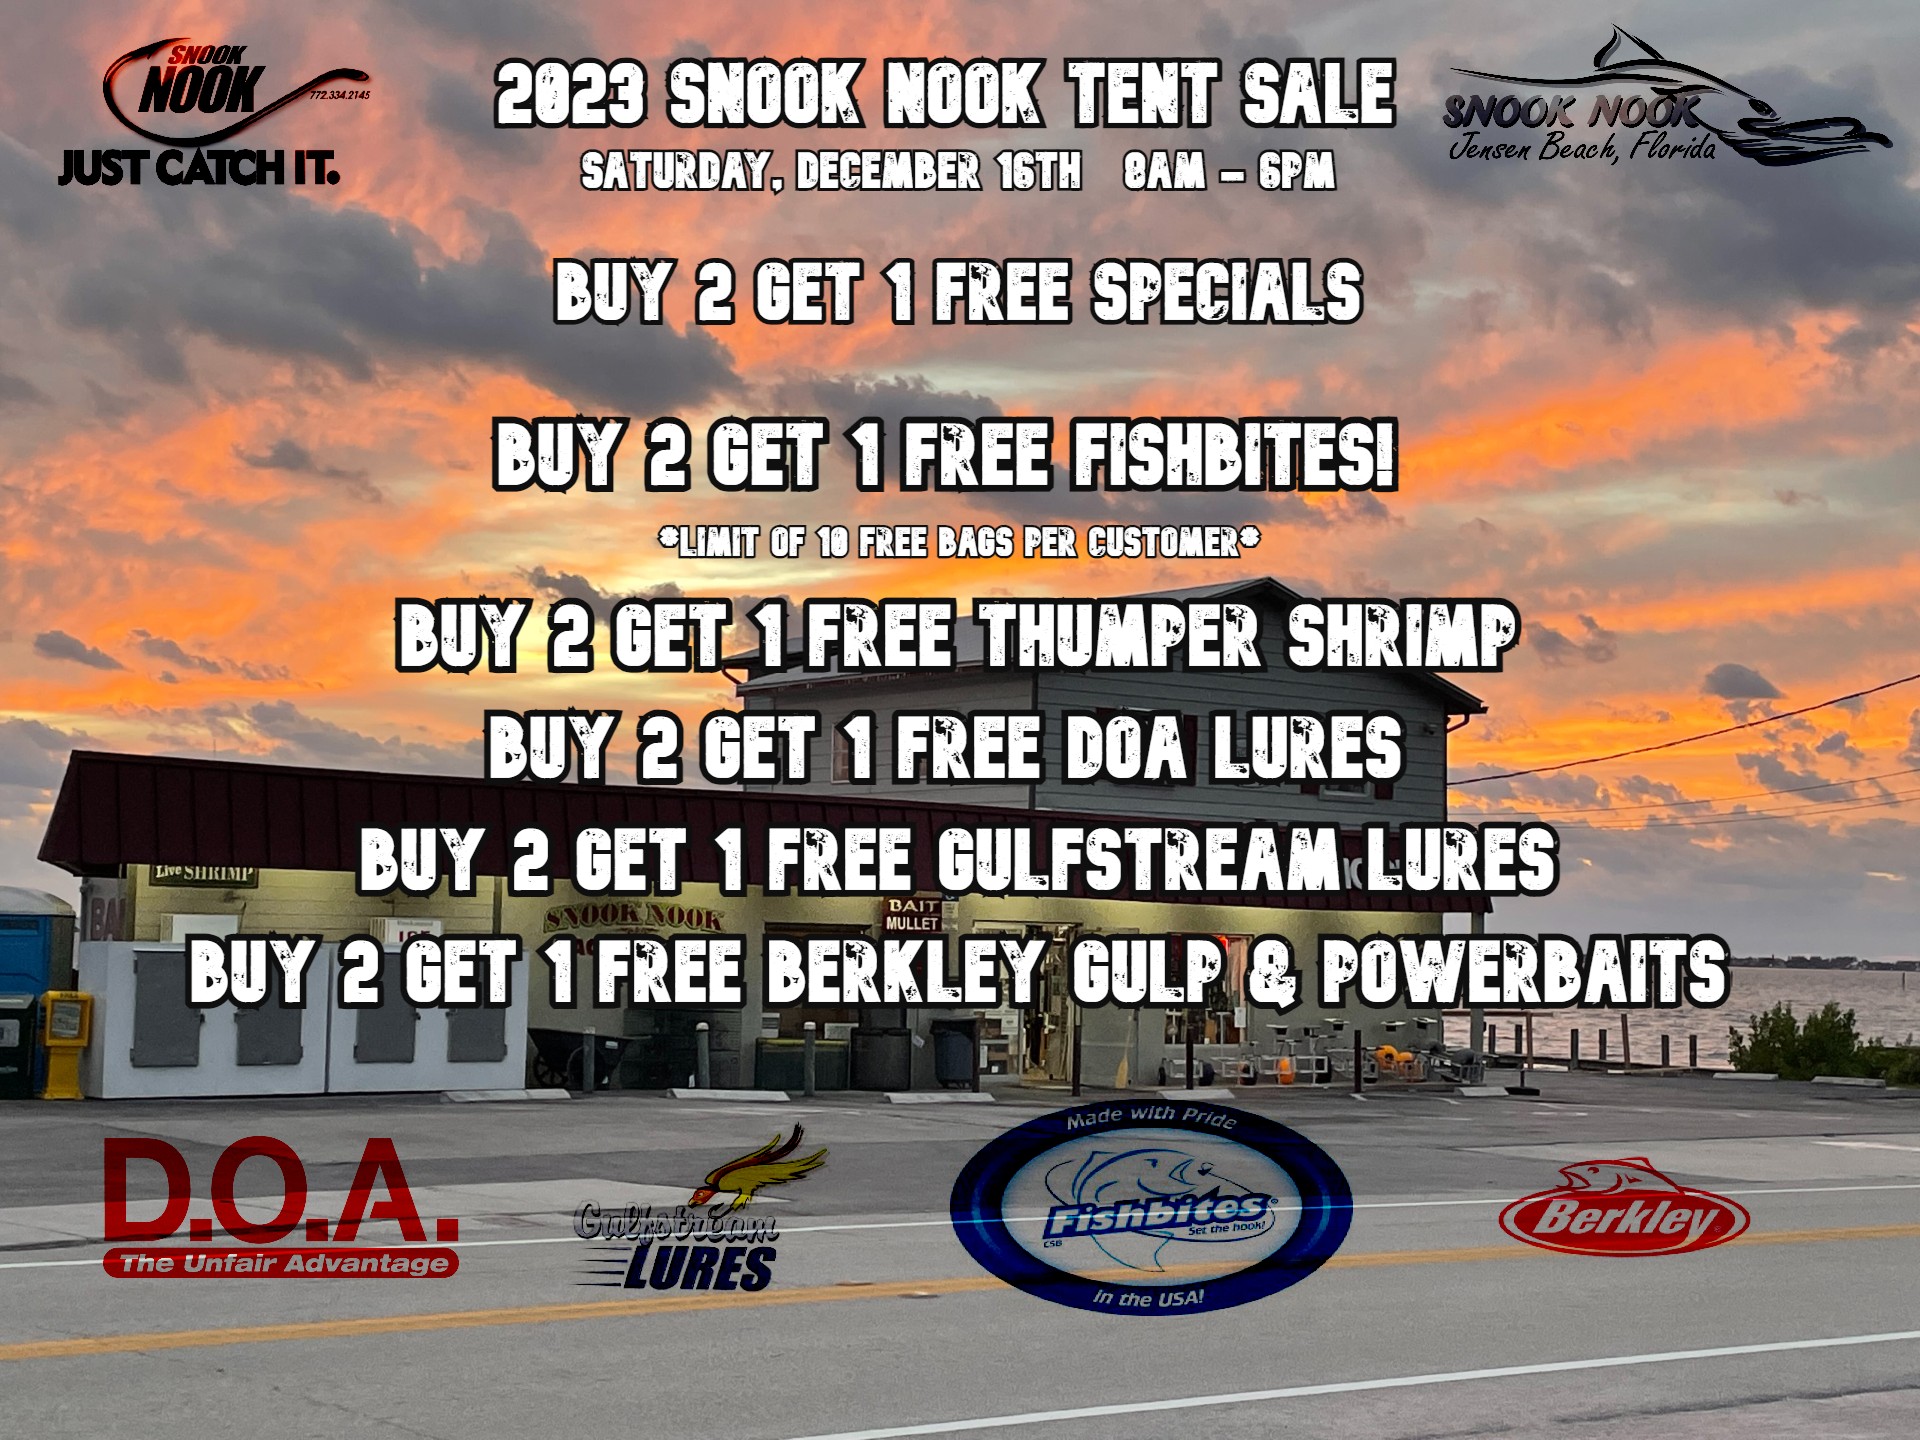 2023 Snook Nook Tent Sale – Buy 2 Get 1 Free Specials